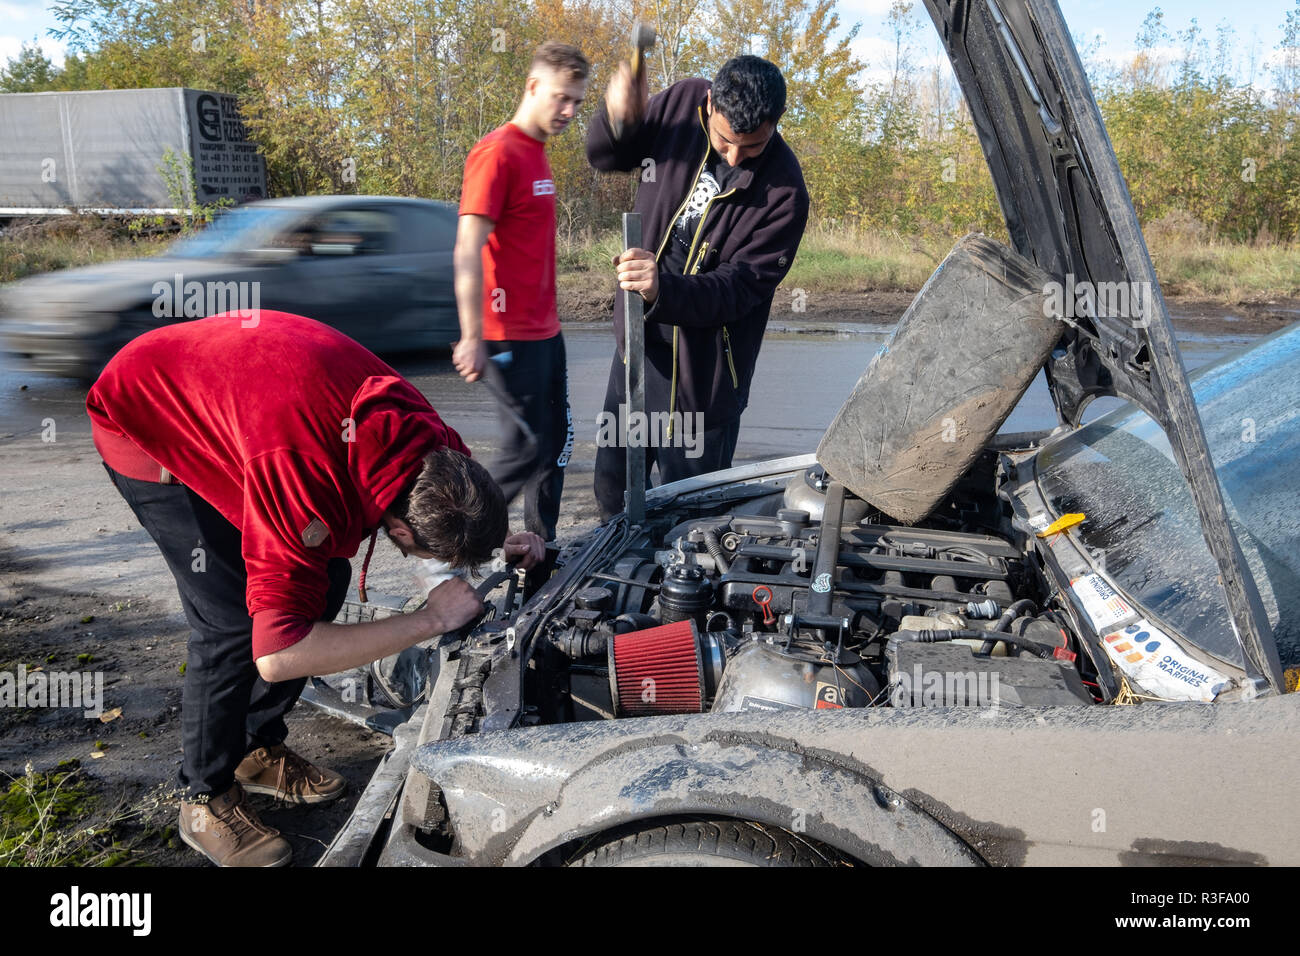 Warschau/Polen - Oktober 21, 2018: 3 Männer reparieren beschädigter Auto während laienhaften treiben Ereignis in Ursus, verlassenen Traktorenfabrik in Warschau Stadtrand. Stockfoto